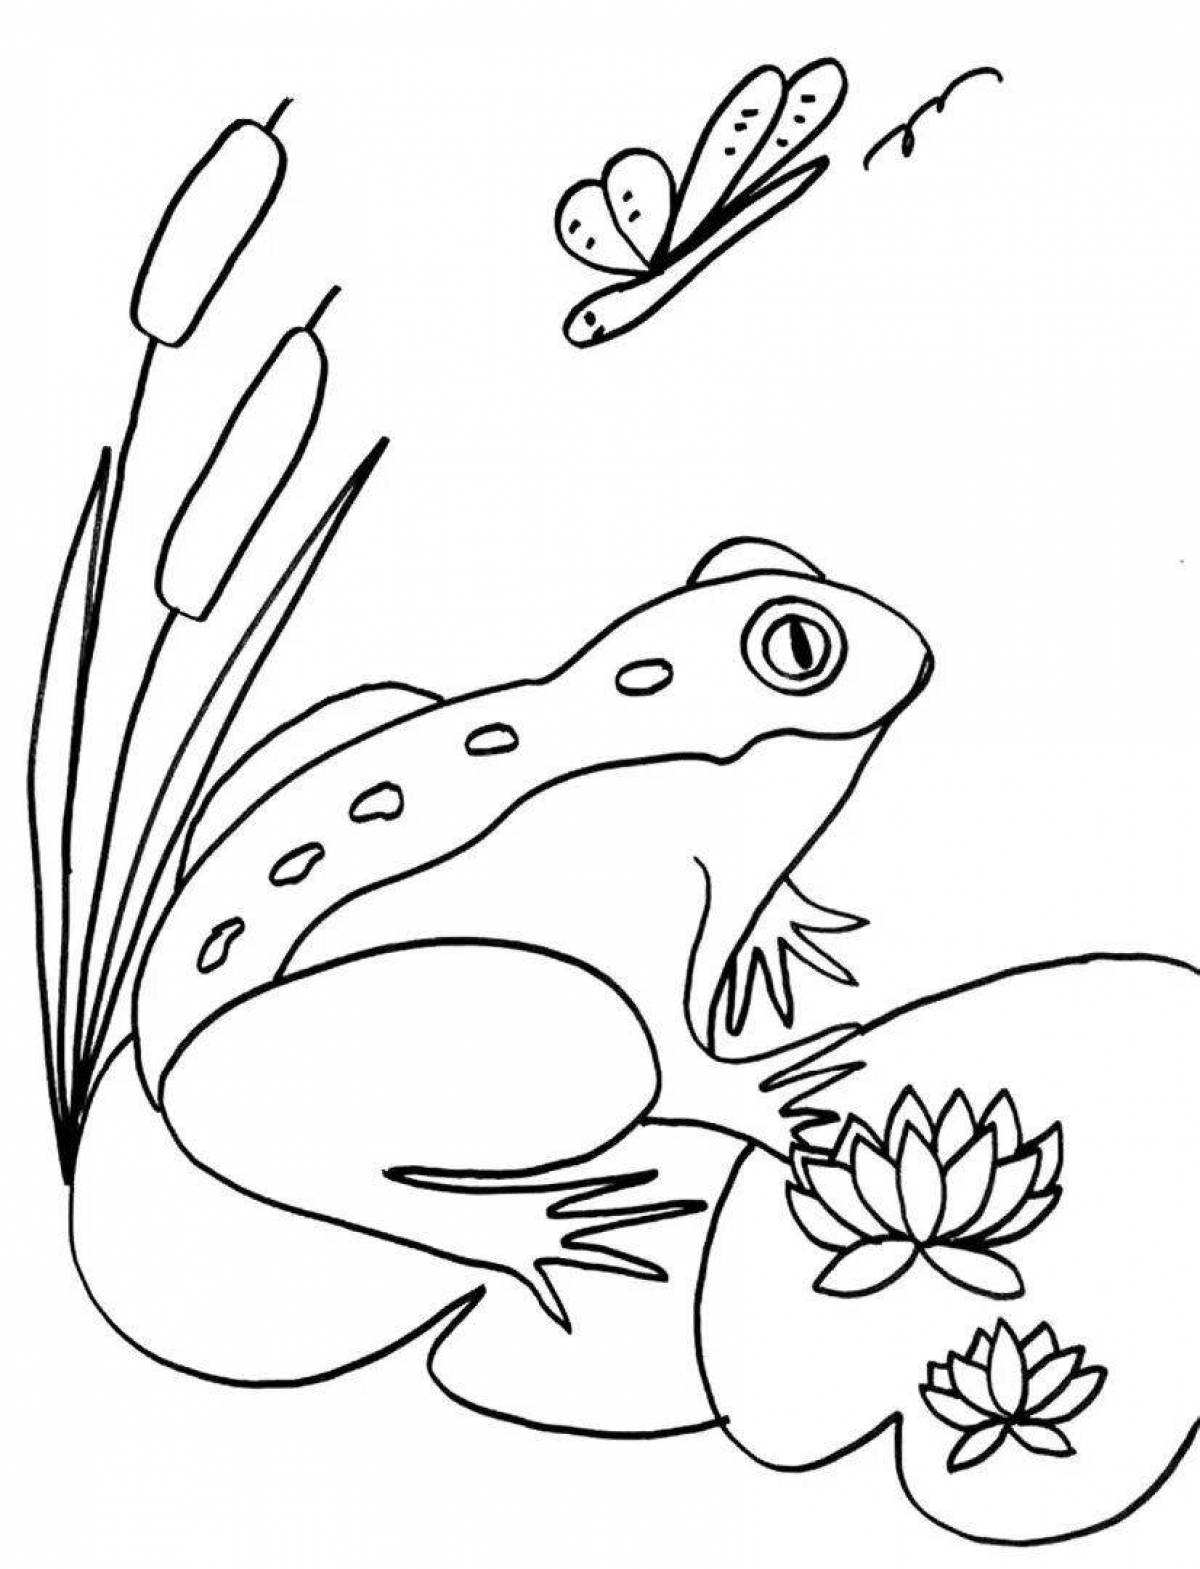 Жизнерадостная лягушка на водяной лилии